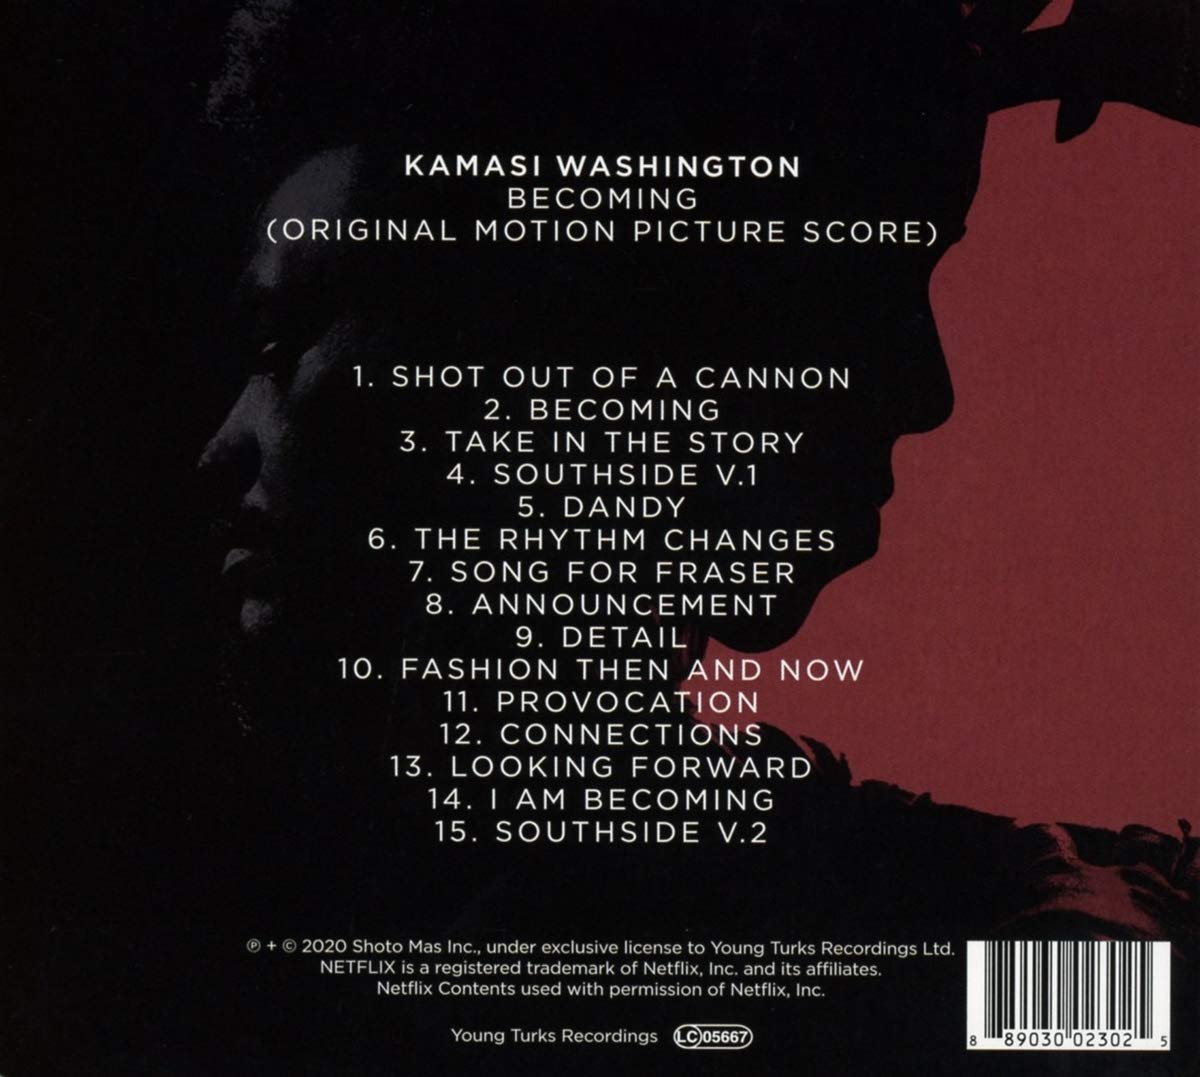 넷플릭스 '미셸 오바마의 비커밍' 다큐멘터리 음악 (Becoming OST by Kamasi Washington 카마시 워싱턴) 